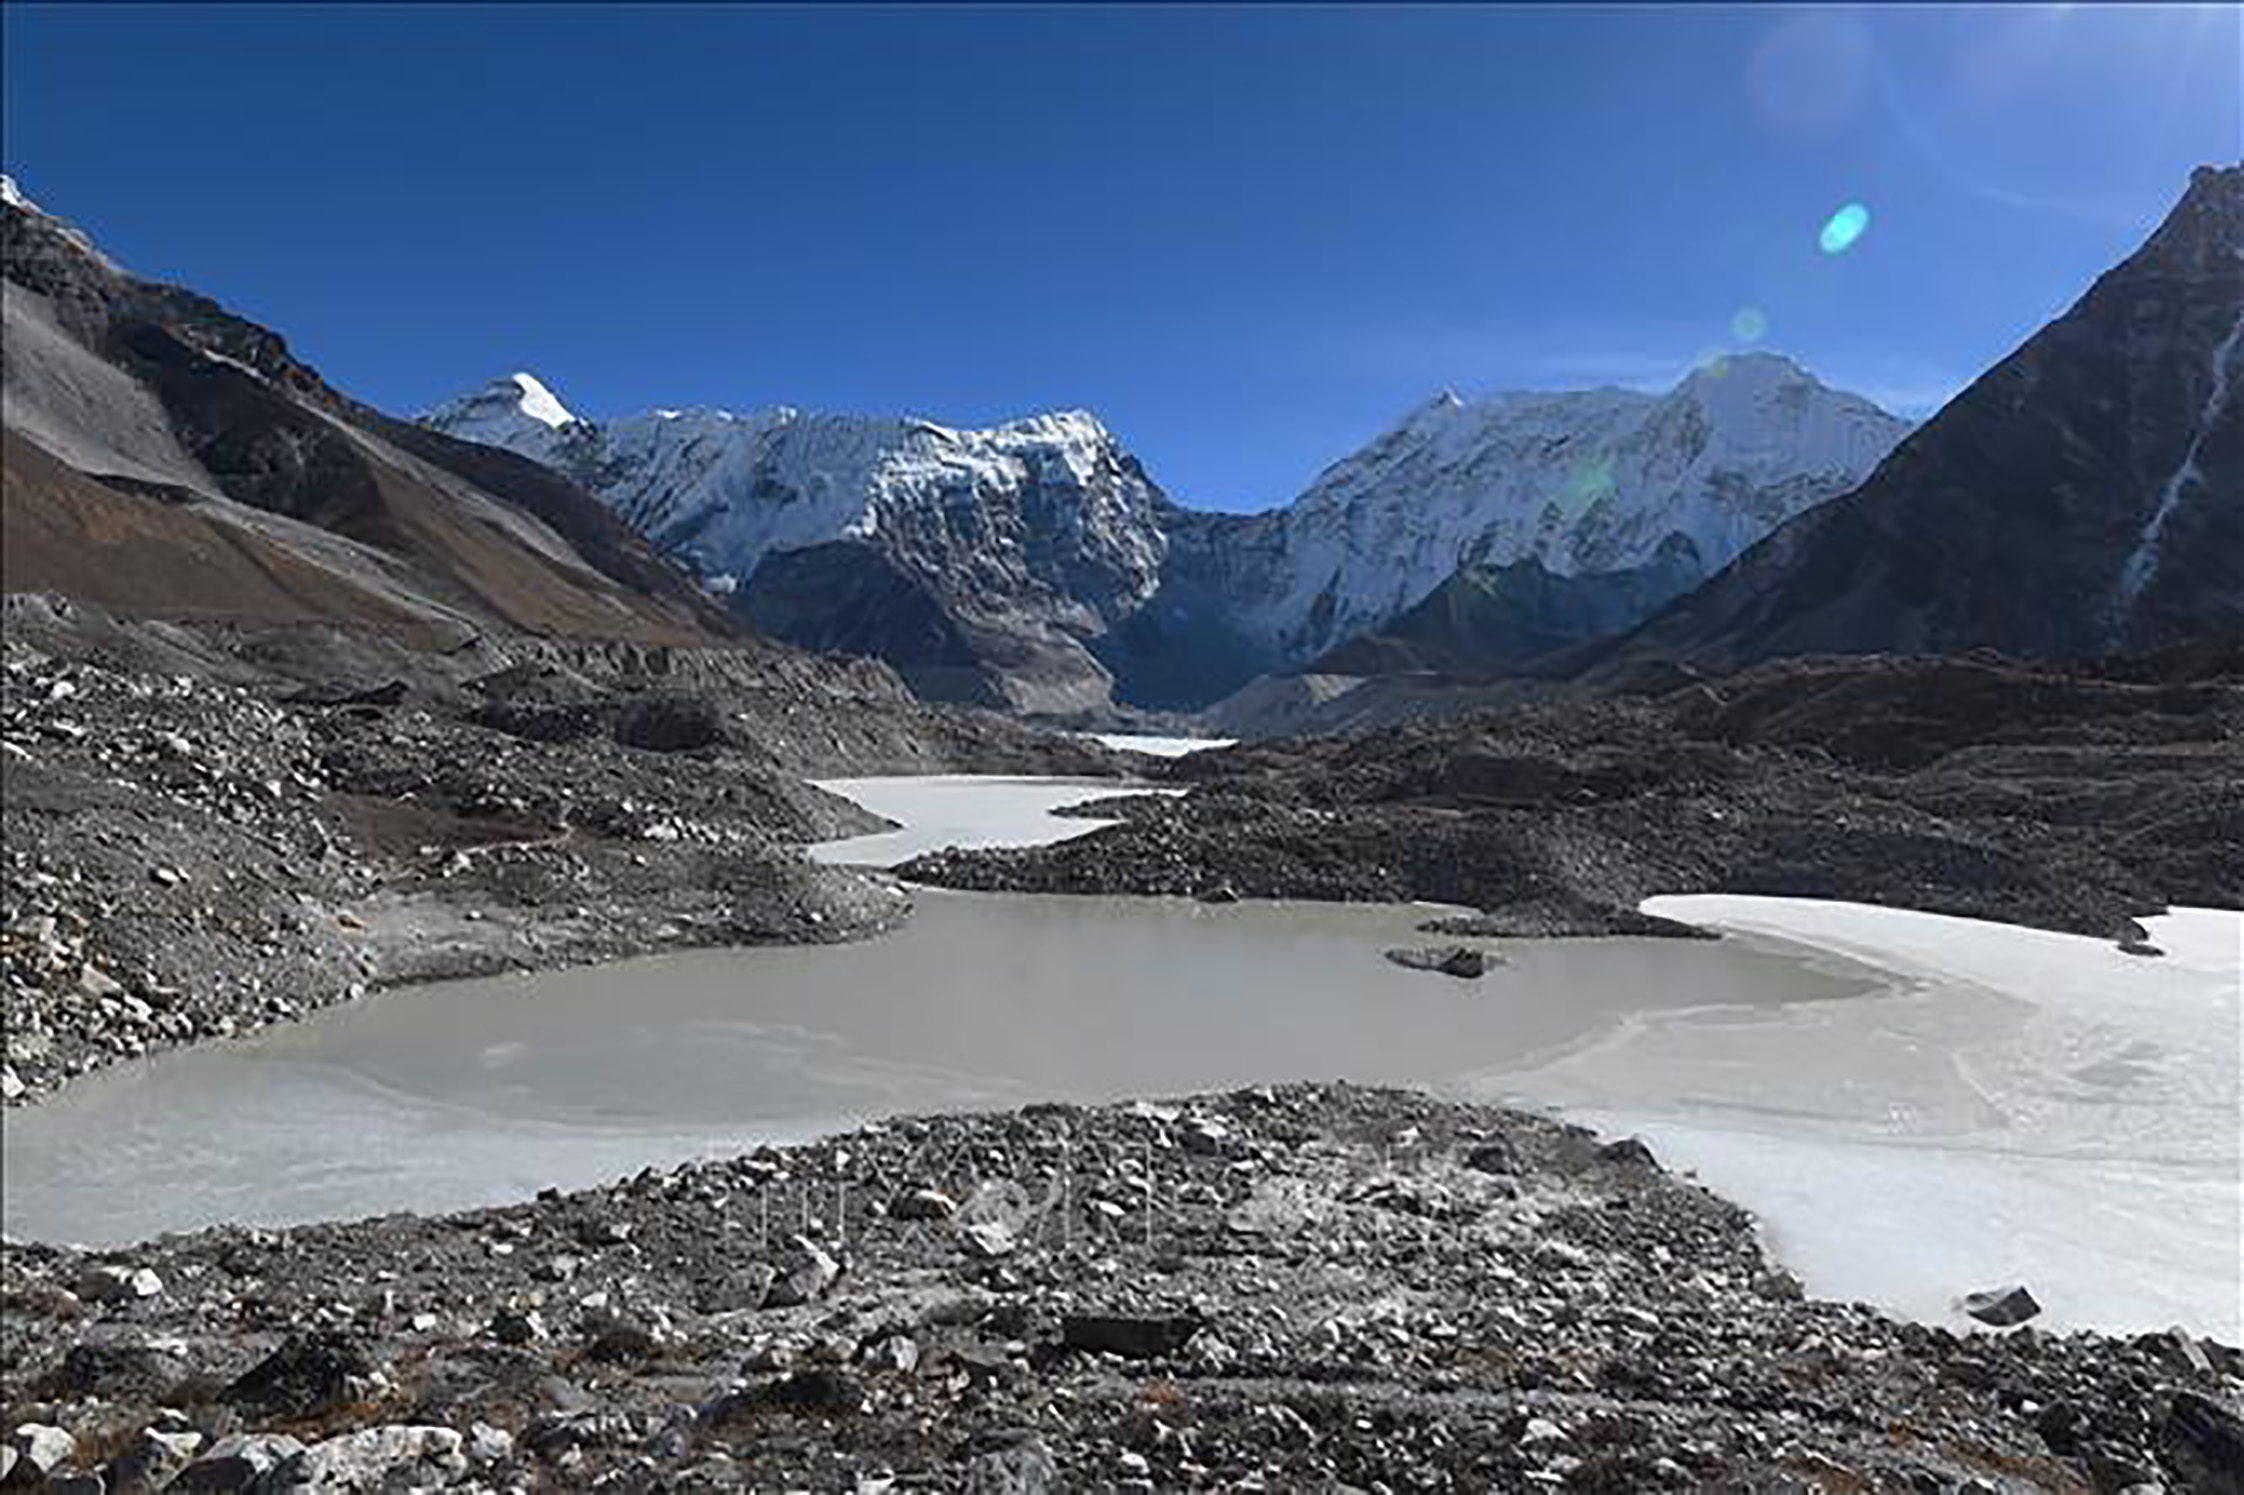 Hồ băng tan chảy từ đỉnh núi ở Solukhumbu, cách thủ đô Kathmandu của Nepal 140 km về phía đông bắc, ngày 22/11/2018. Ảnh tư liệu